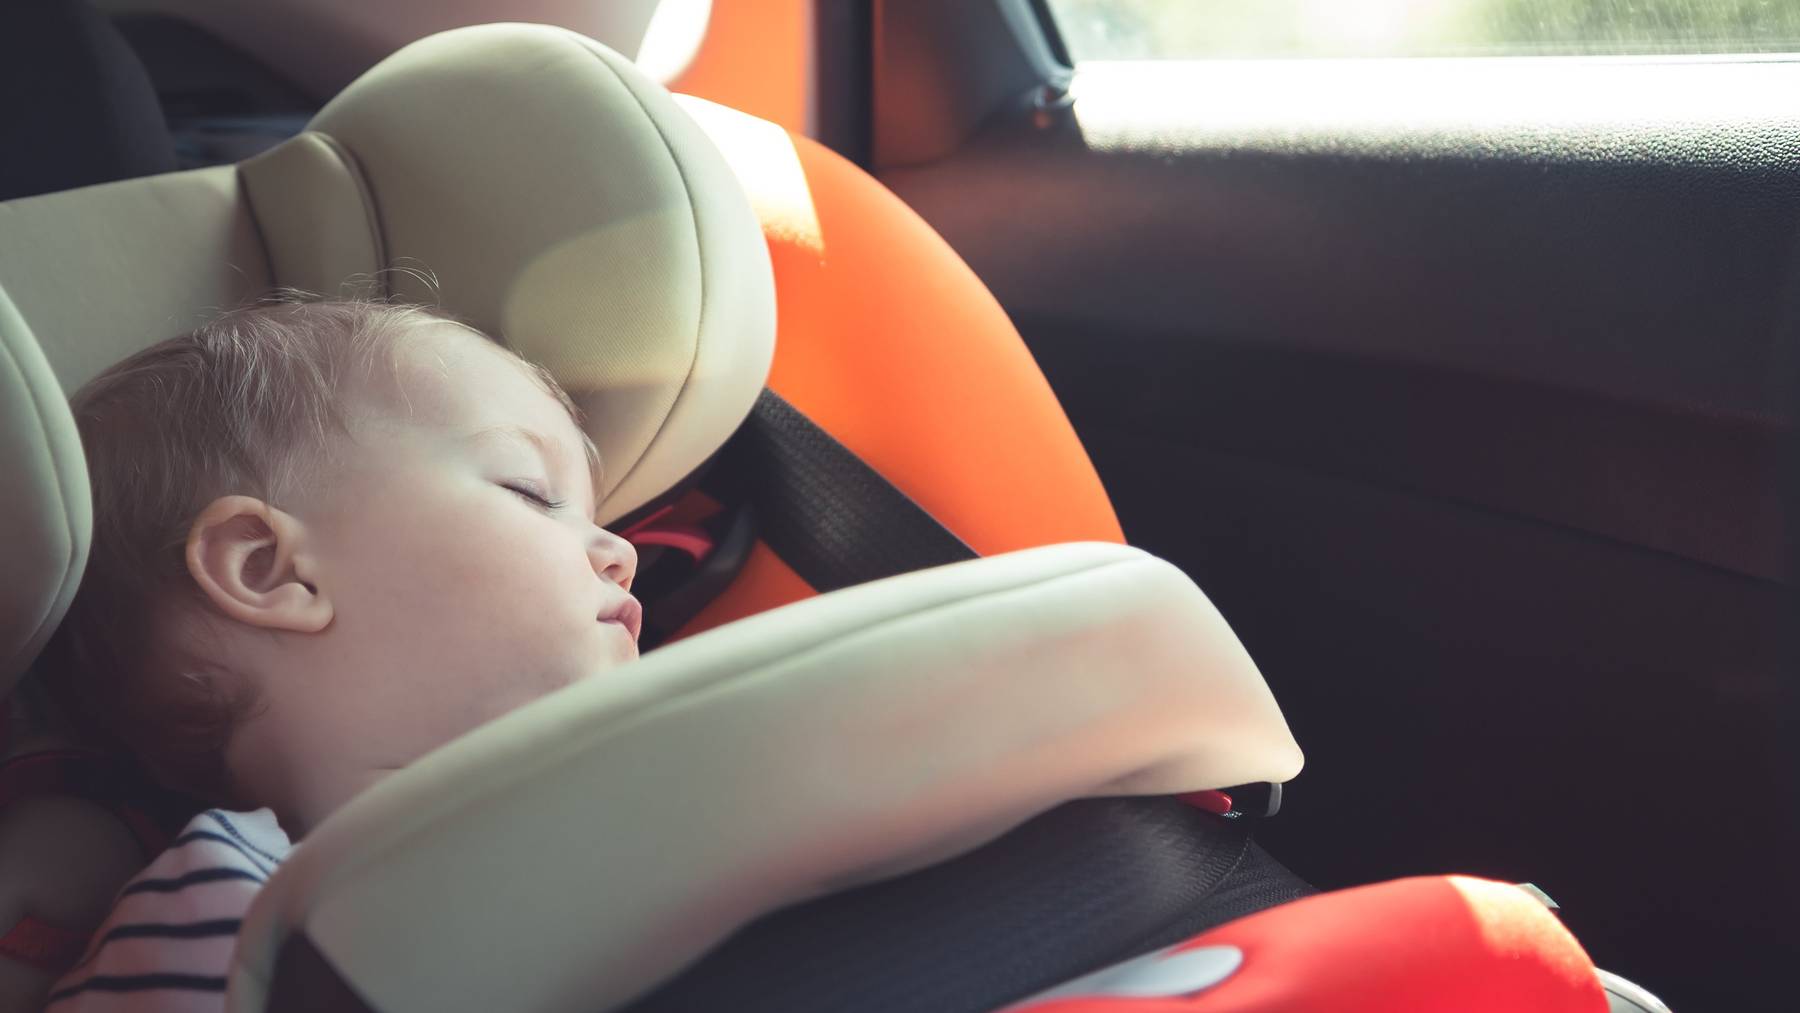 Babys und Kleinkinder sollte man auf keinen Fall alleine im Auto lassen. (Symbolbild)